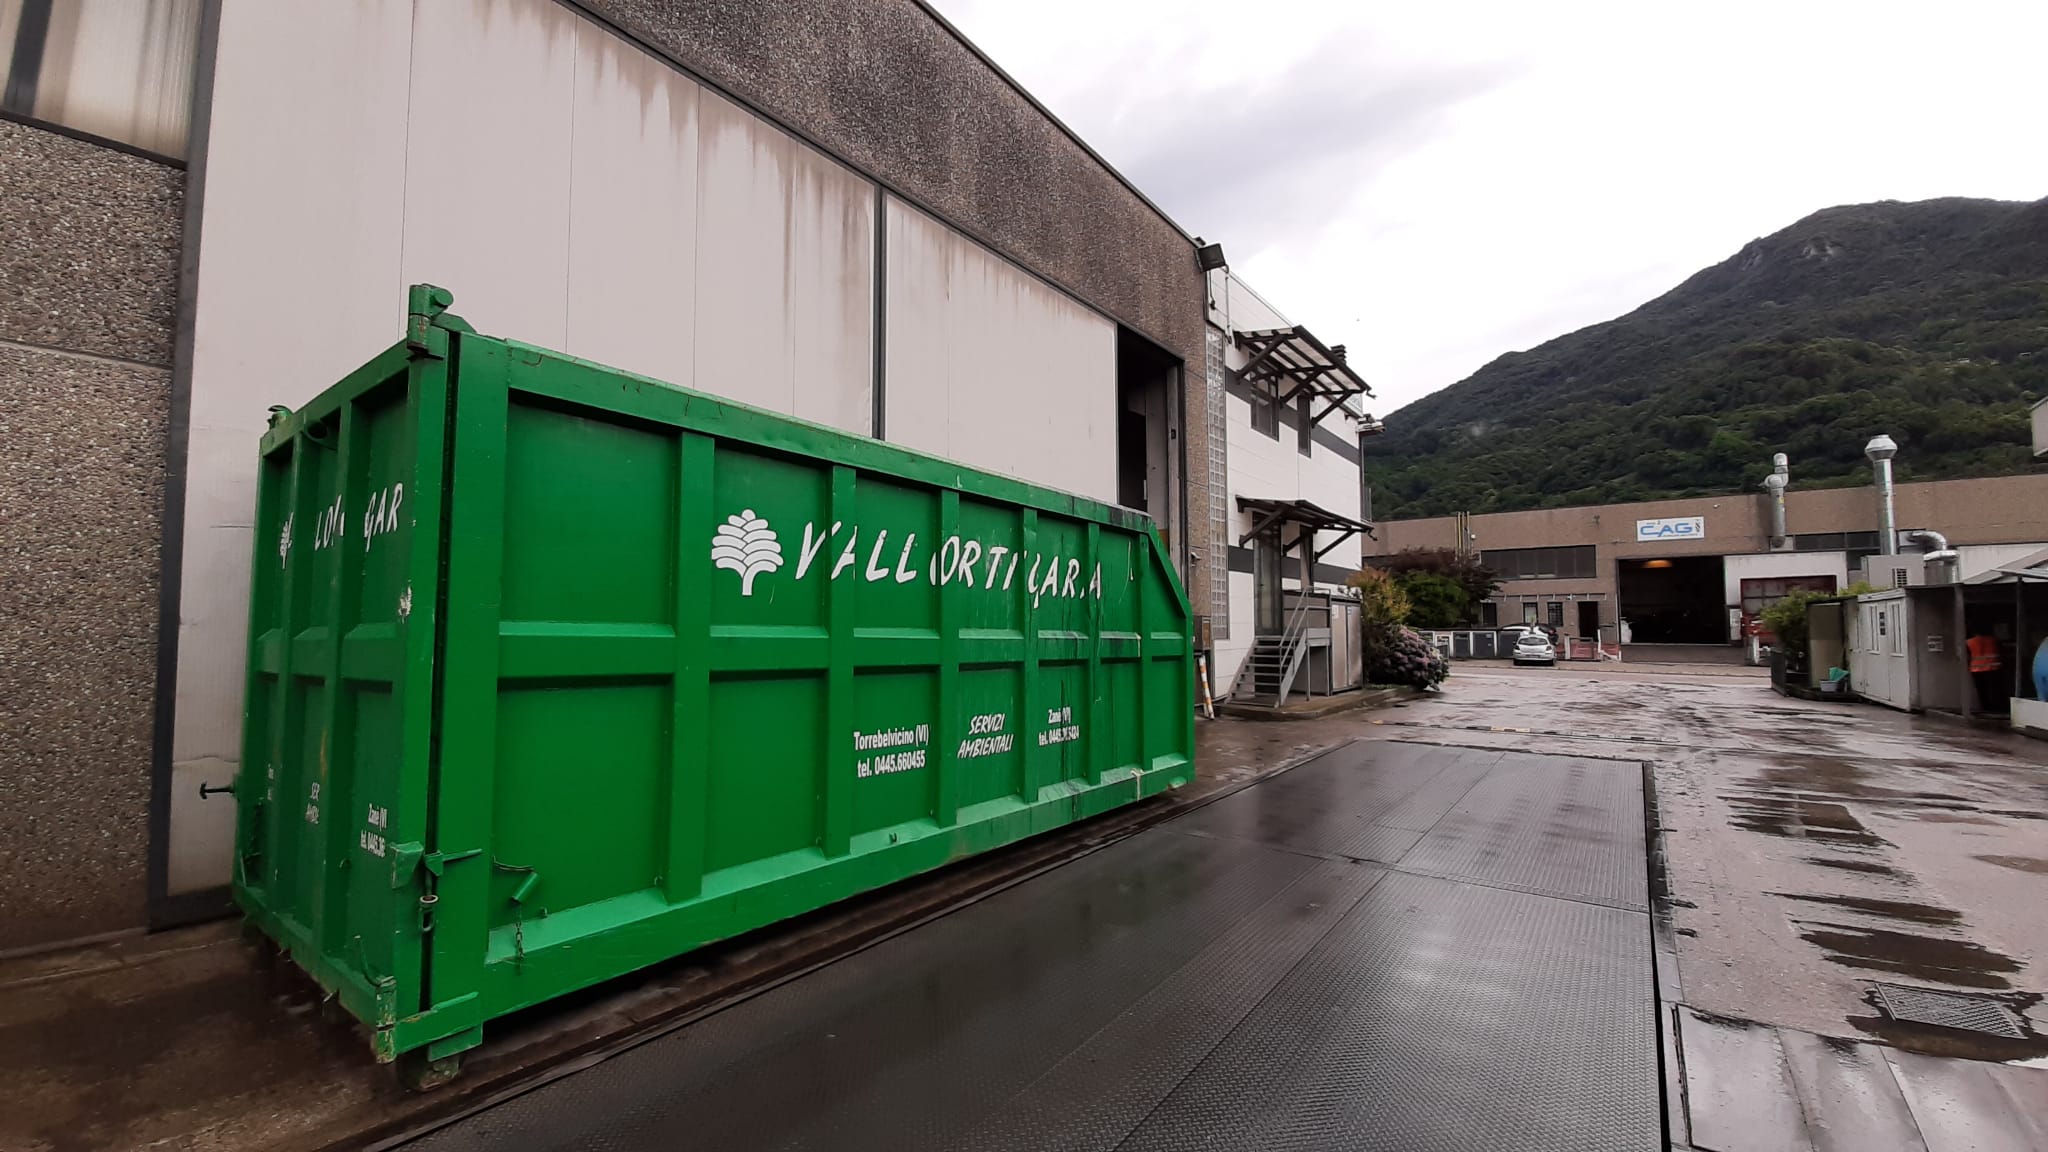 Cargo Waste treatment platform in Torrebelvicino (Vicenza)